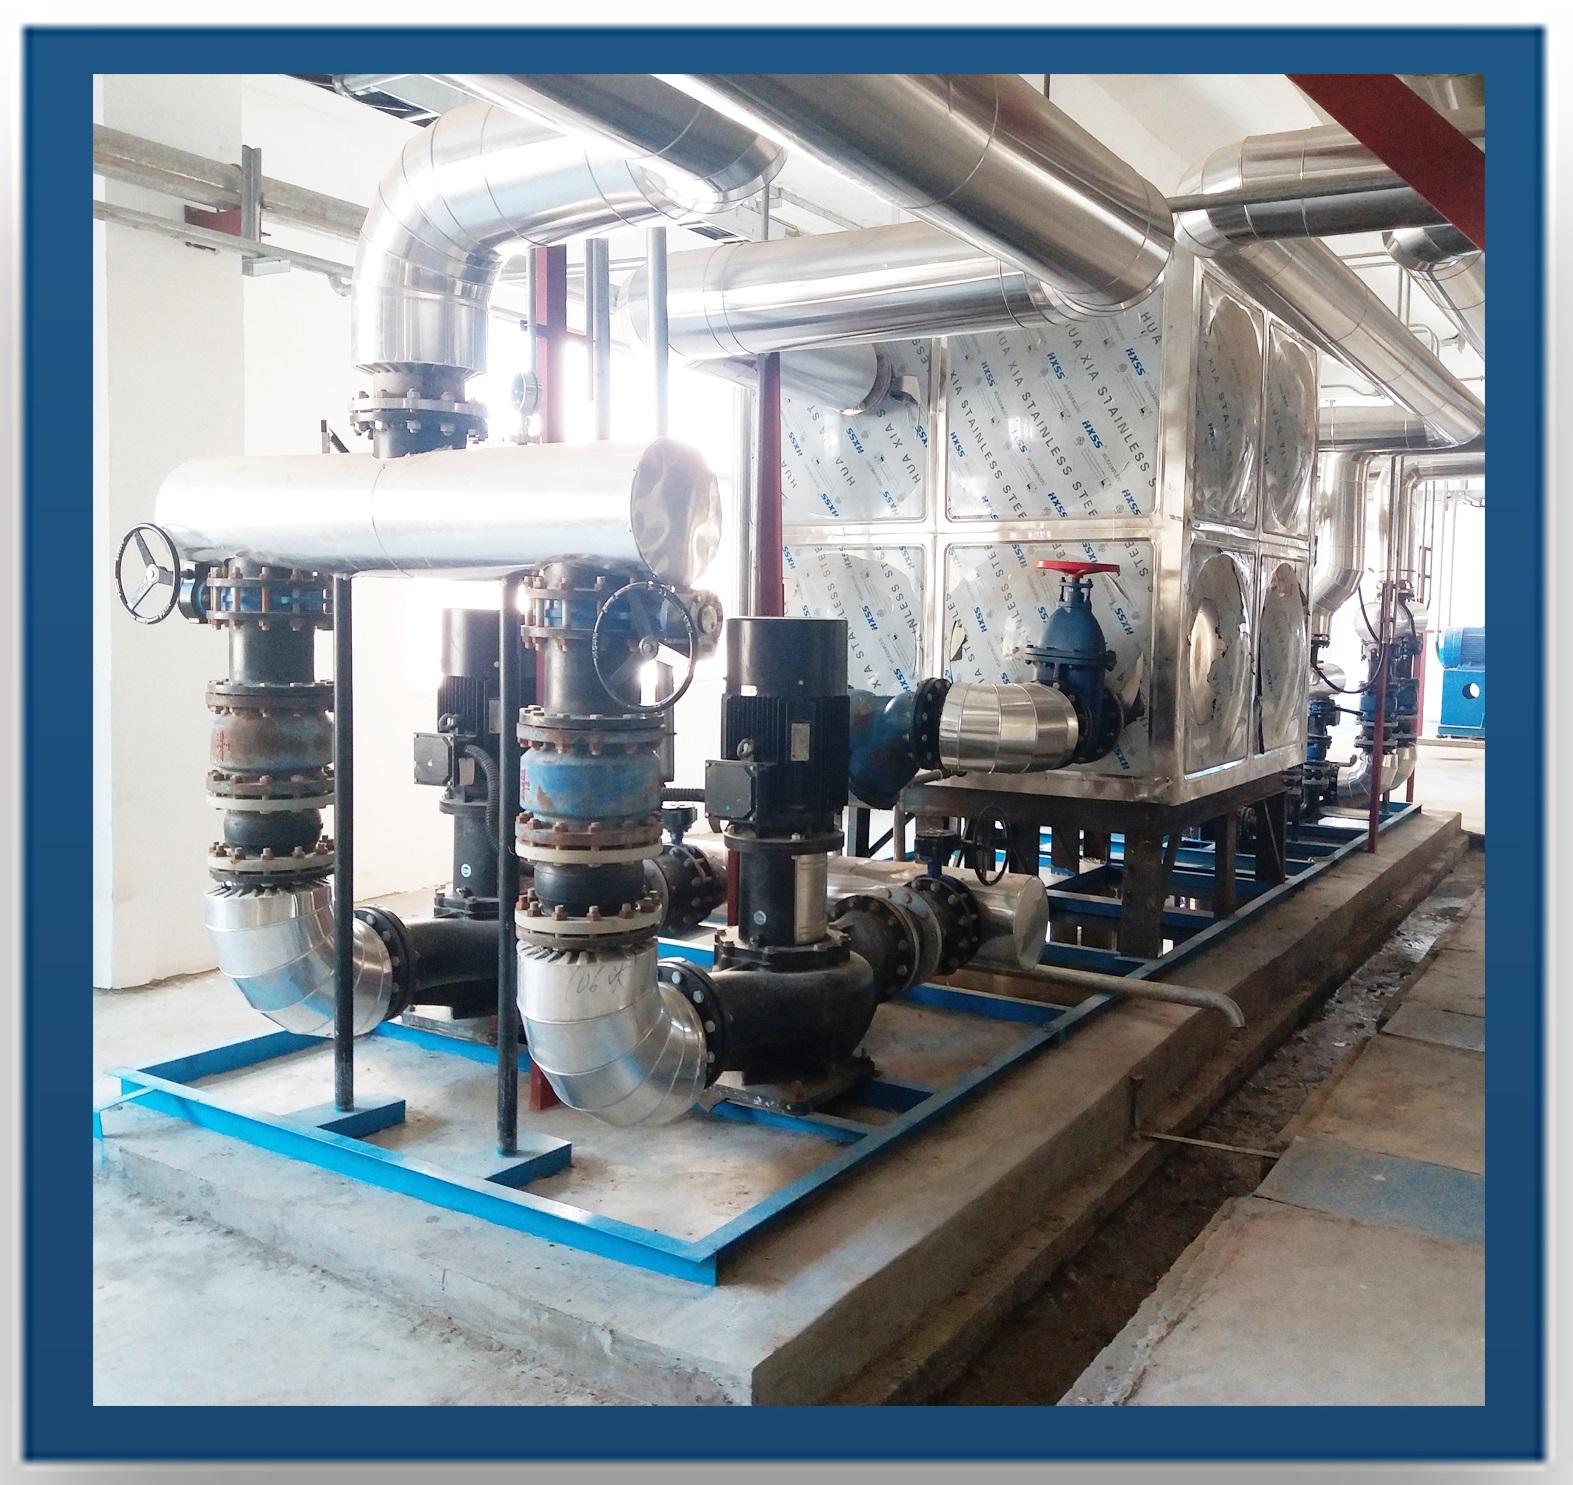 普瑞普勒 空气干燥、制冷，废蜜处理等冷热交换装置  柬埔寨项目设备